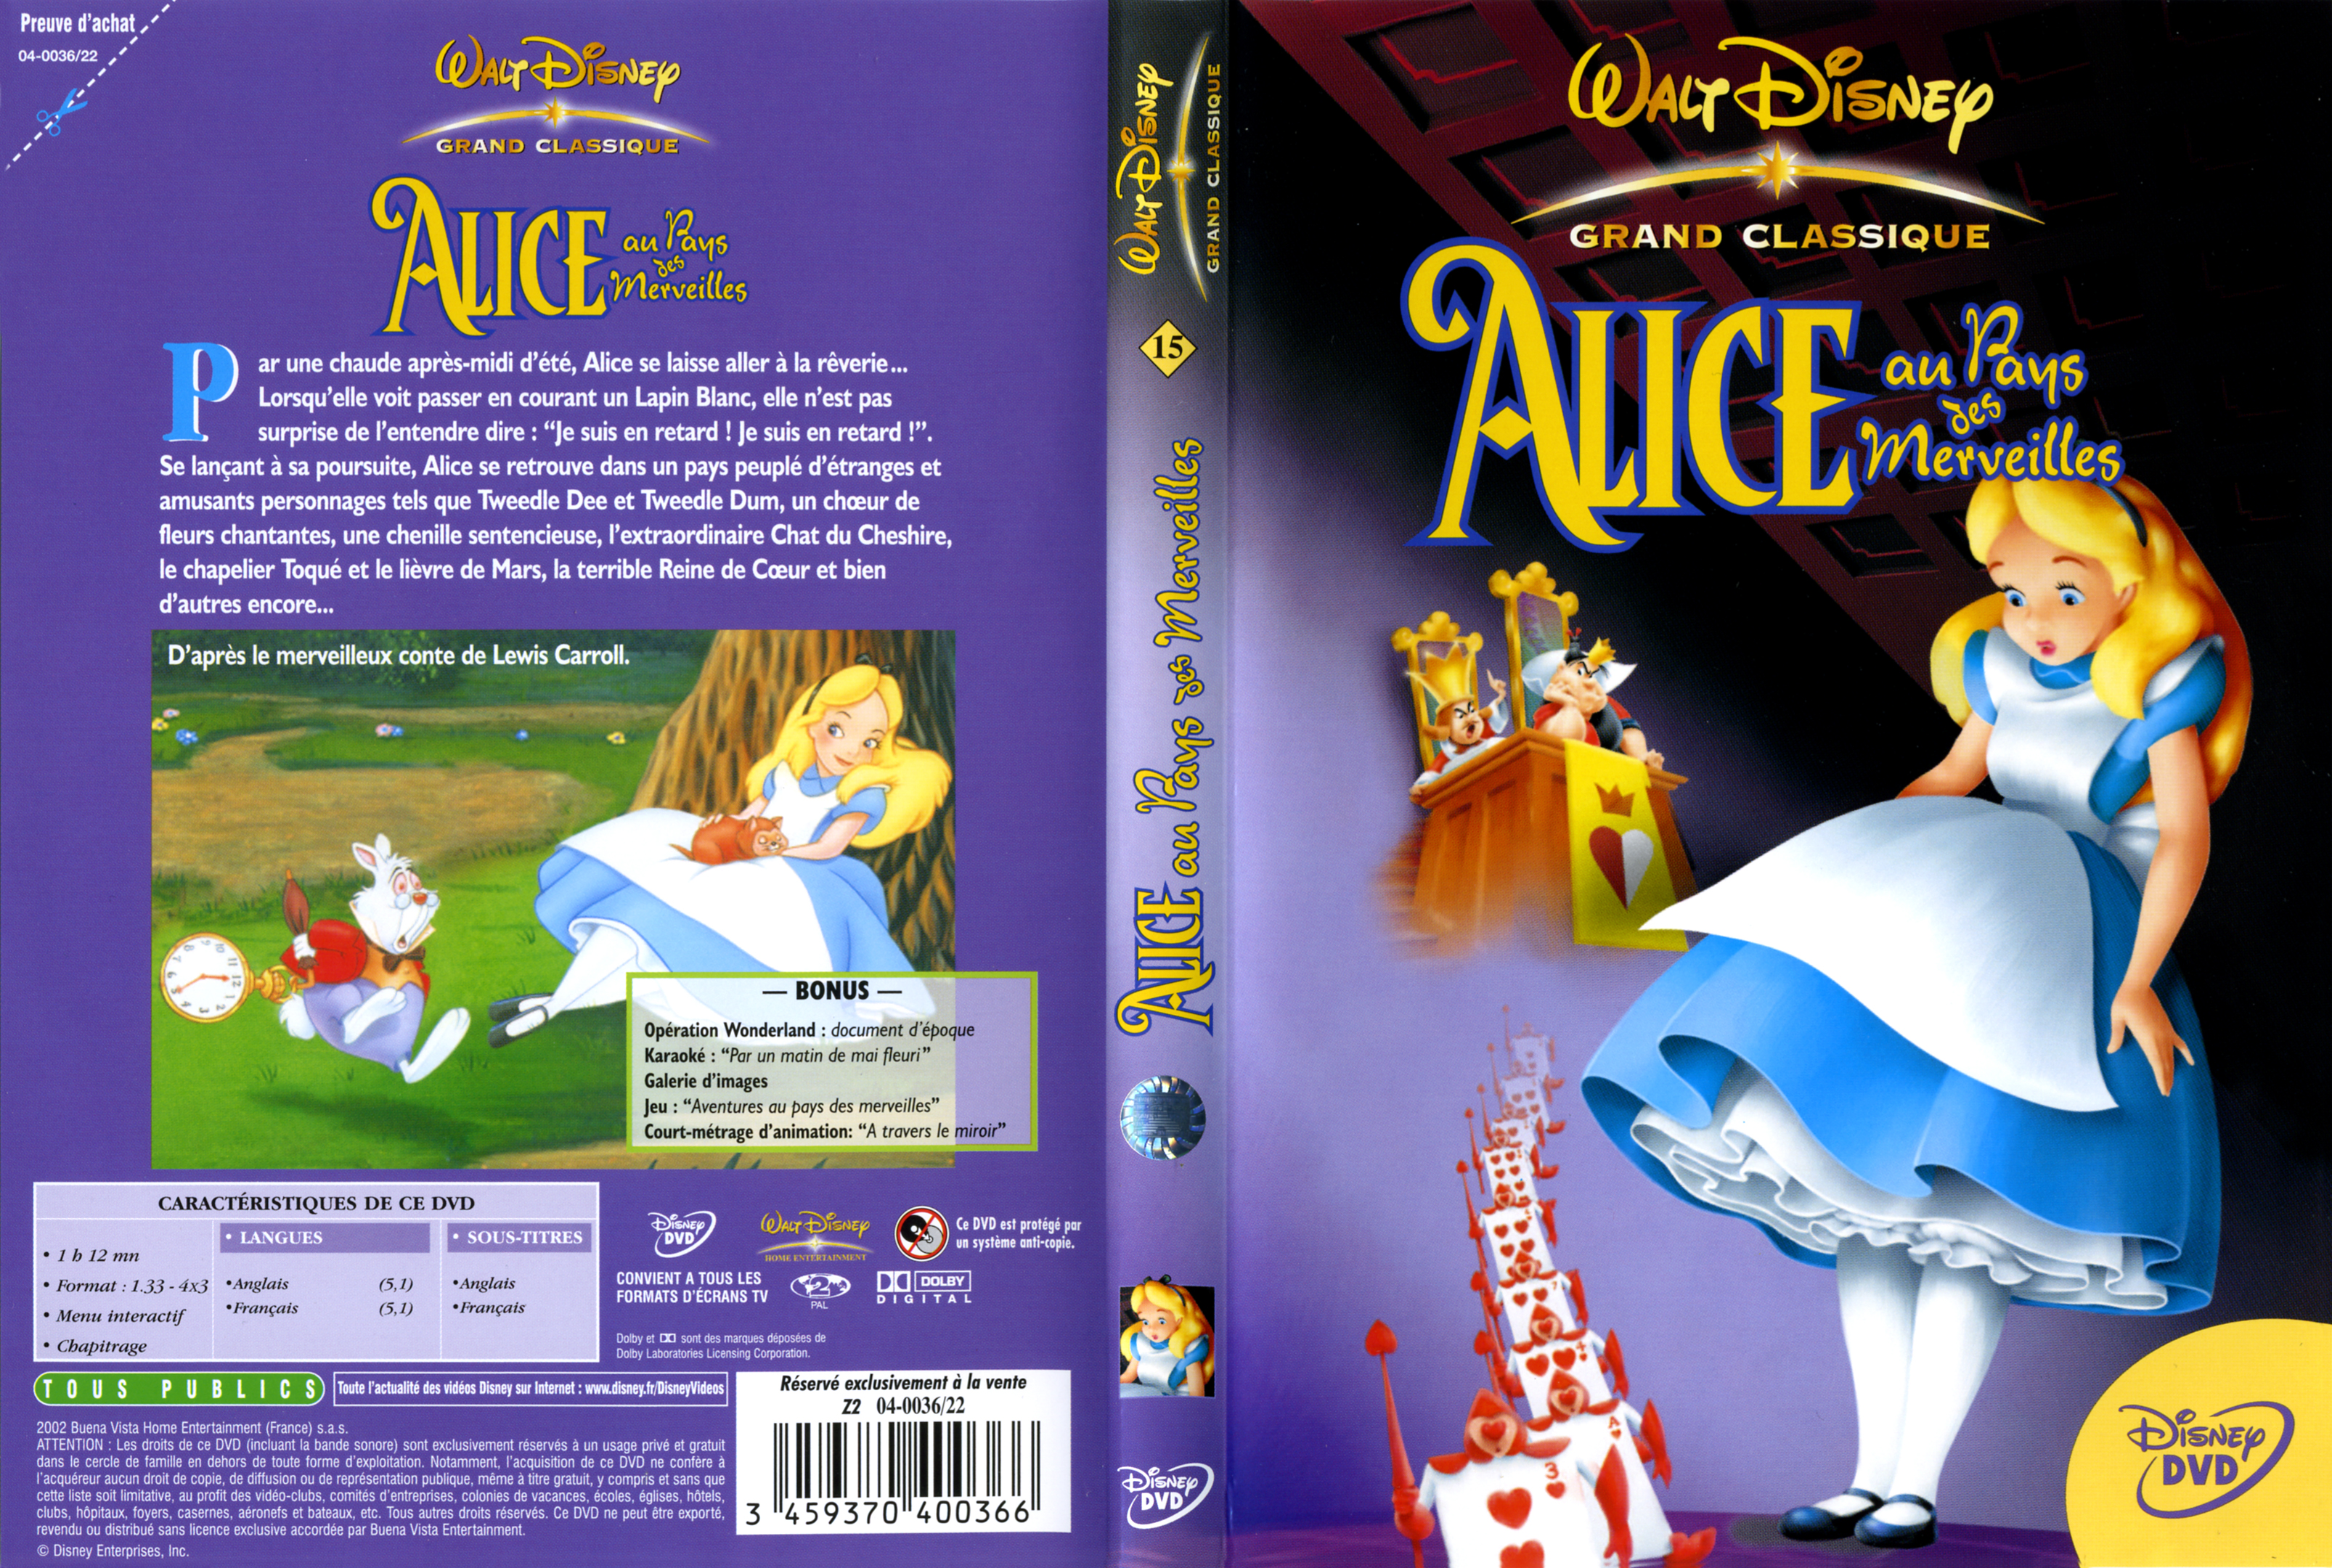 Jaquette DVD Alice au pays des merveilles v2